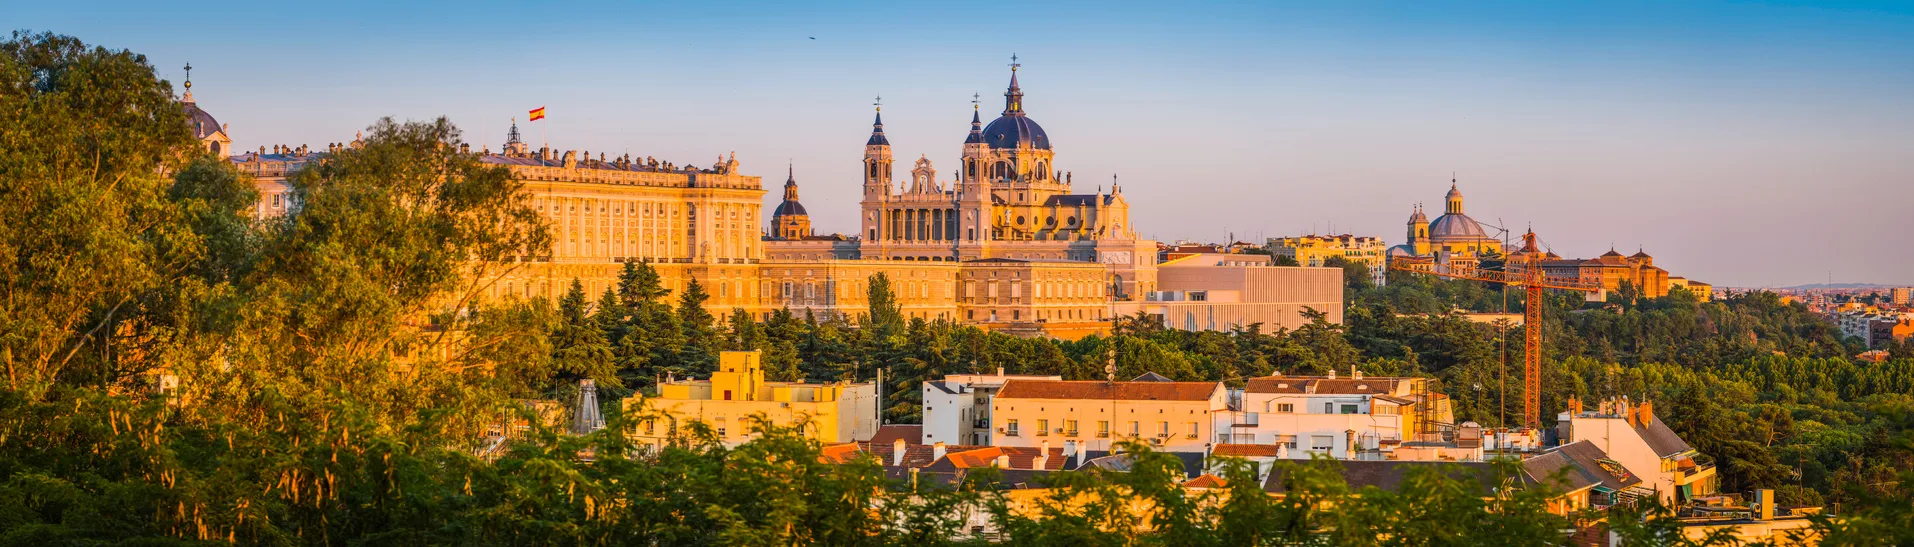 La cathédrale de la Almudena et le palais royal de Madrid  © iStock / fotoVoyager